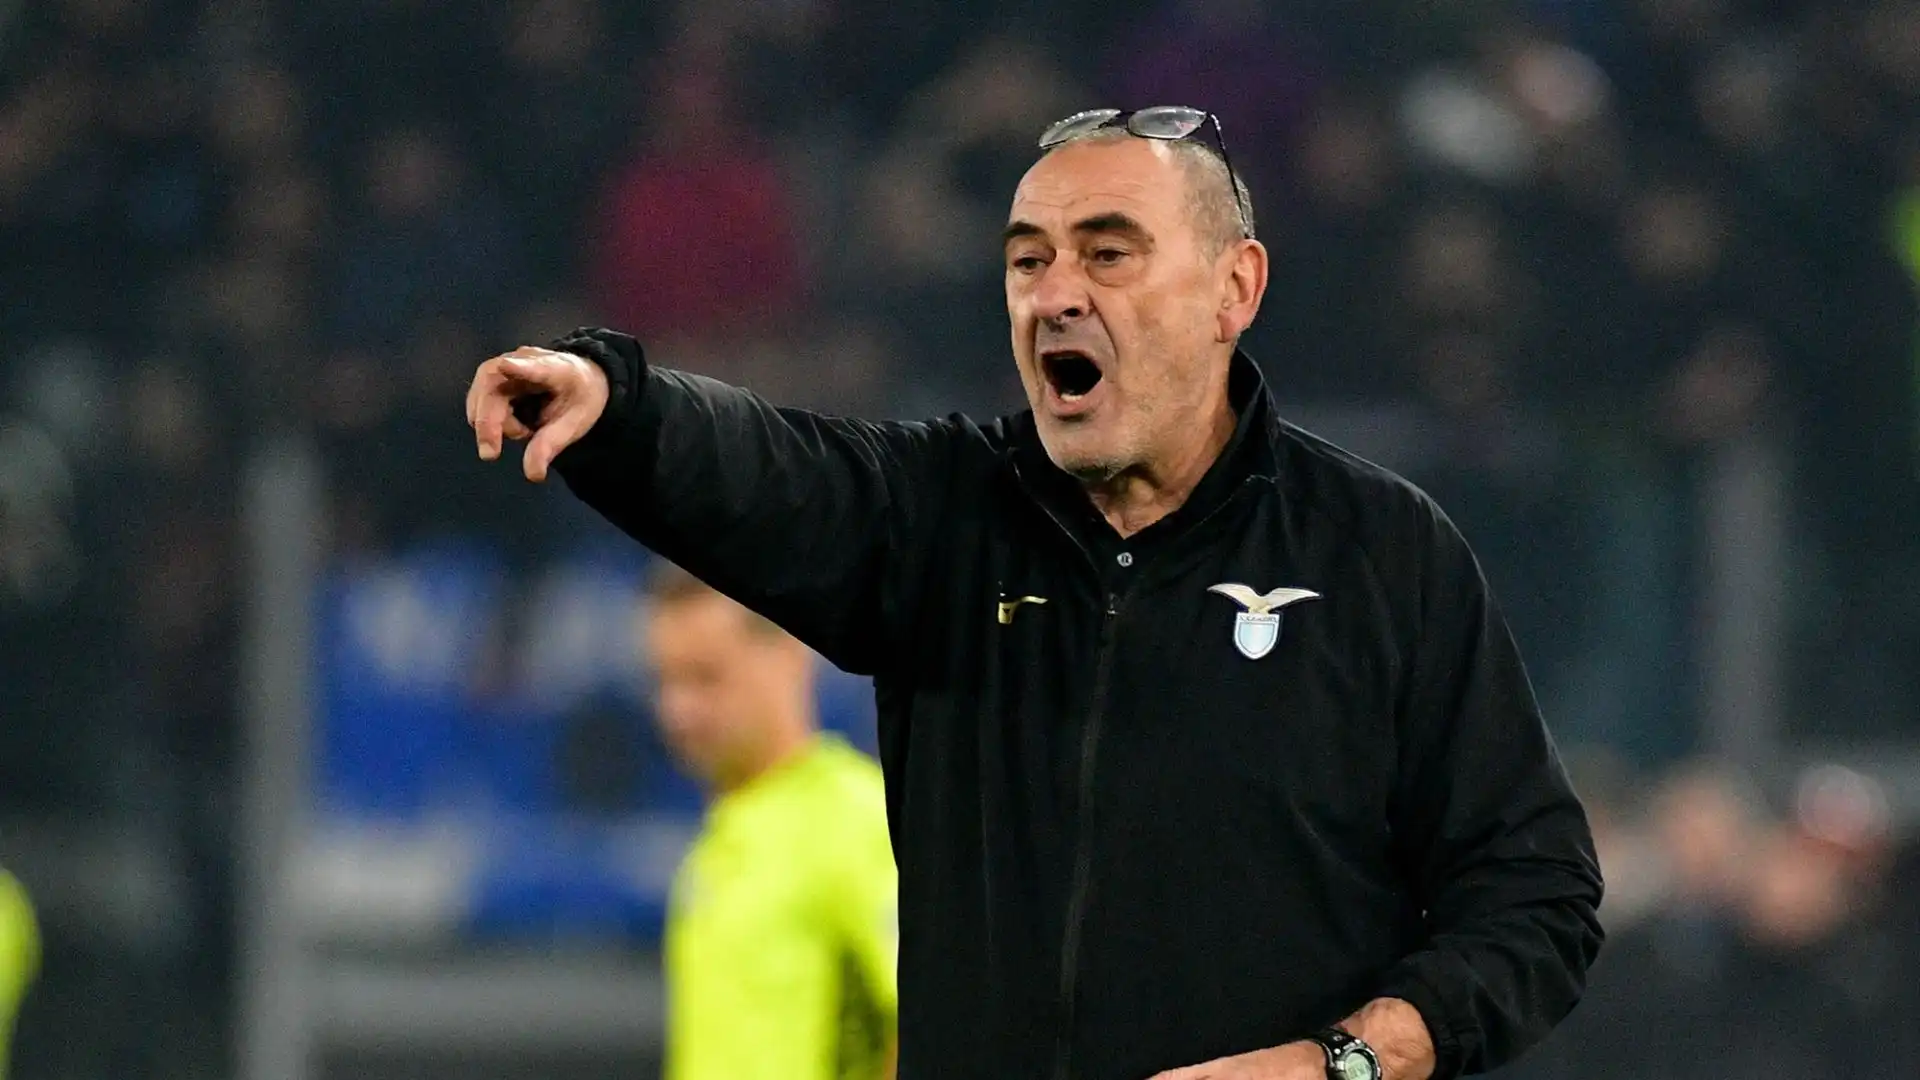 L'allenatore è senza squadra dopo essersi dimesso dalla Lazio